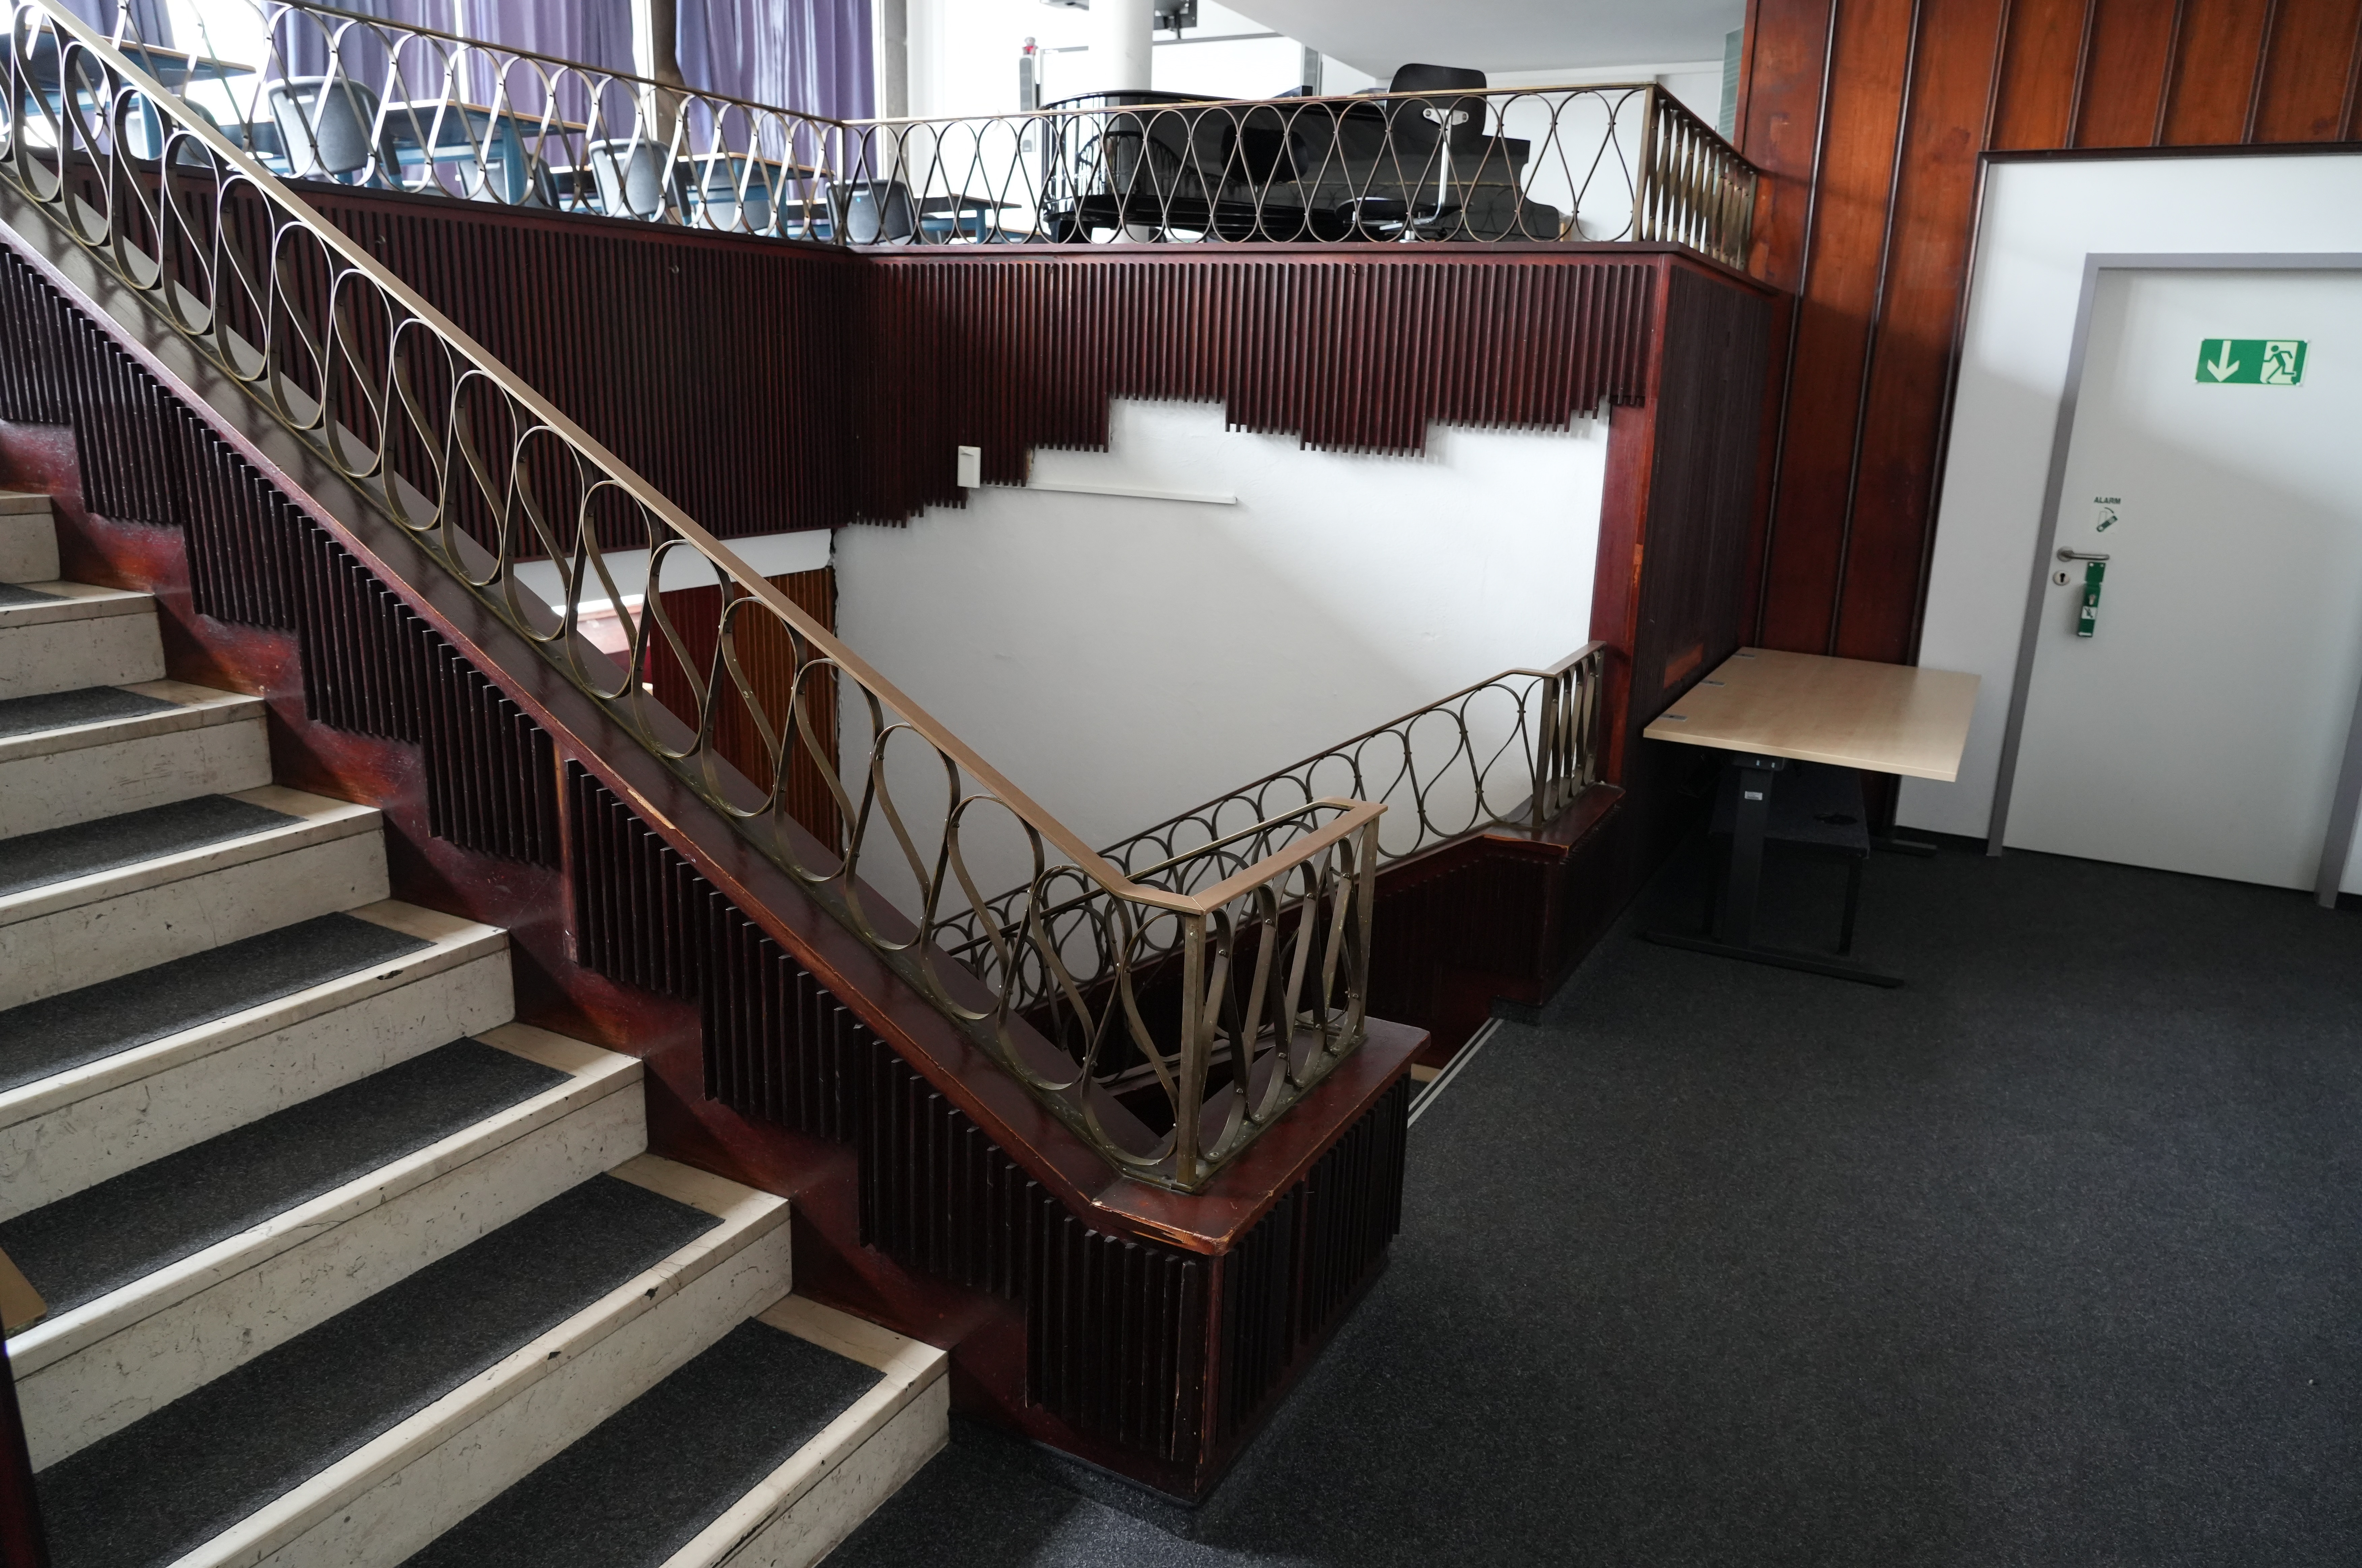 Die Treppe des "Ratskellers" heute. Am oberen Rand ist die Bestuhlung des Ratsgymnasiums zu sehen.